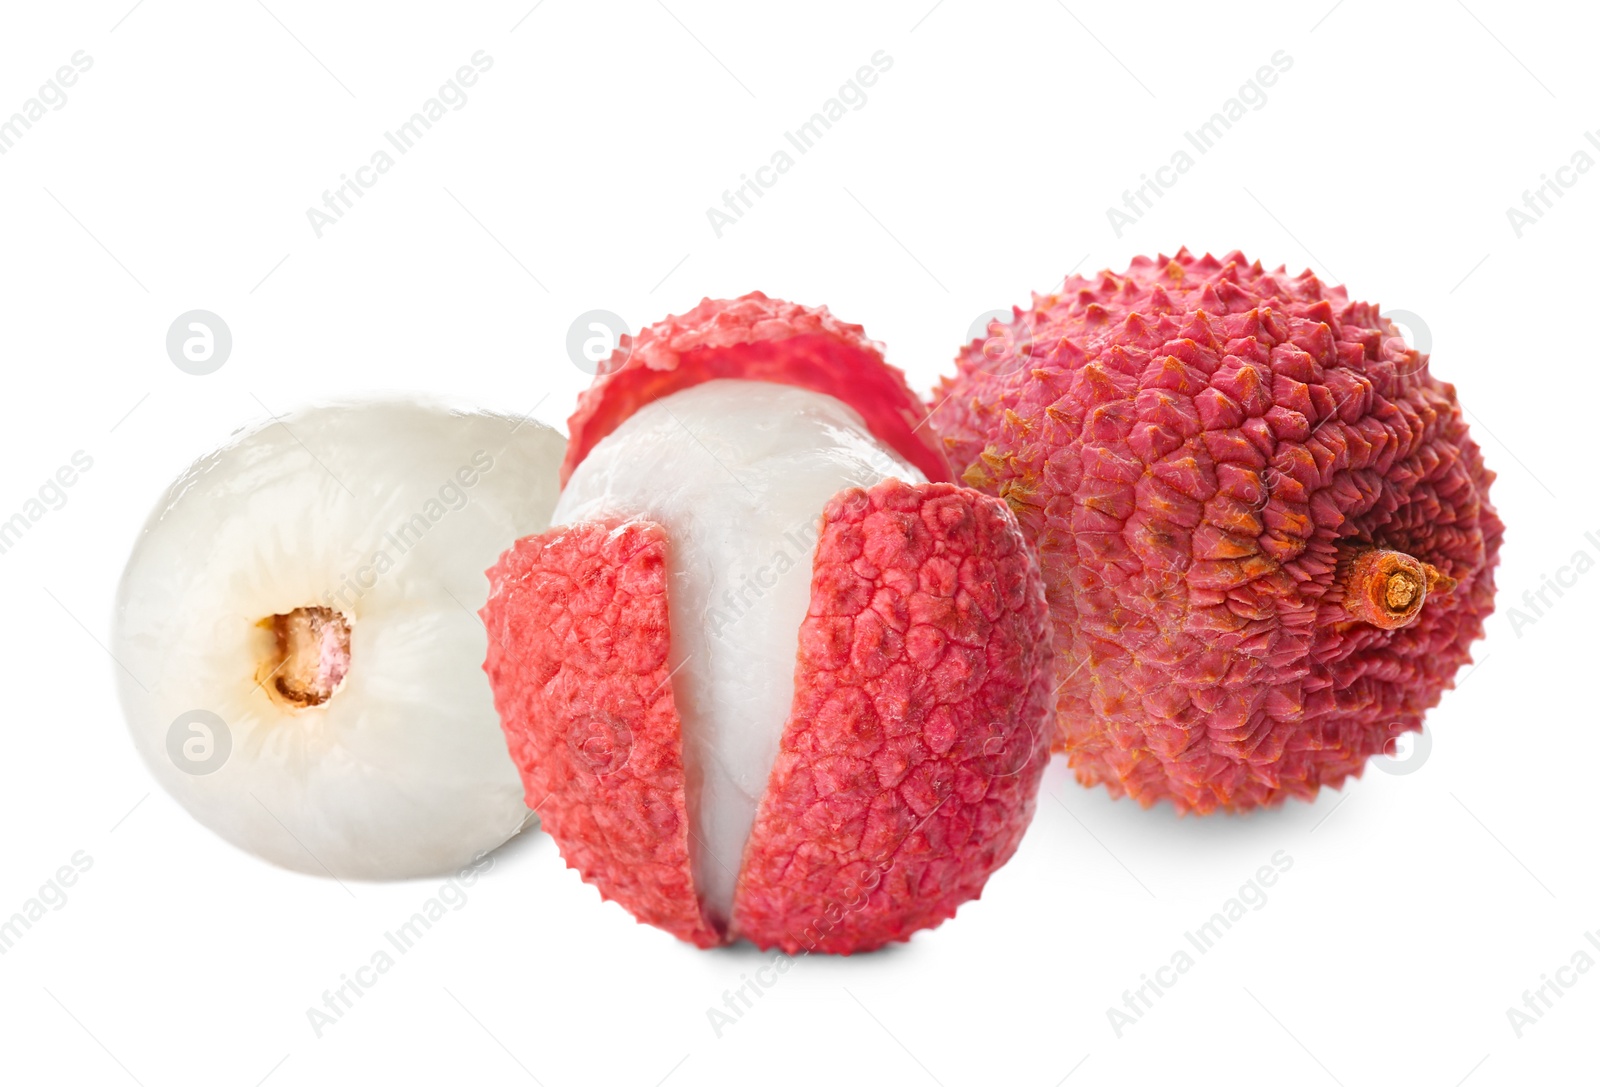 Image of Fresh ripe lychee fruits on white background